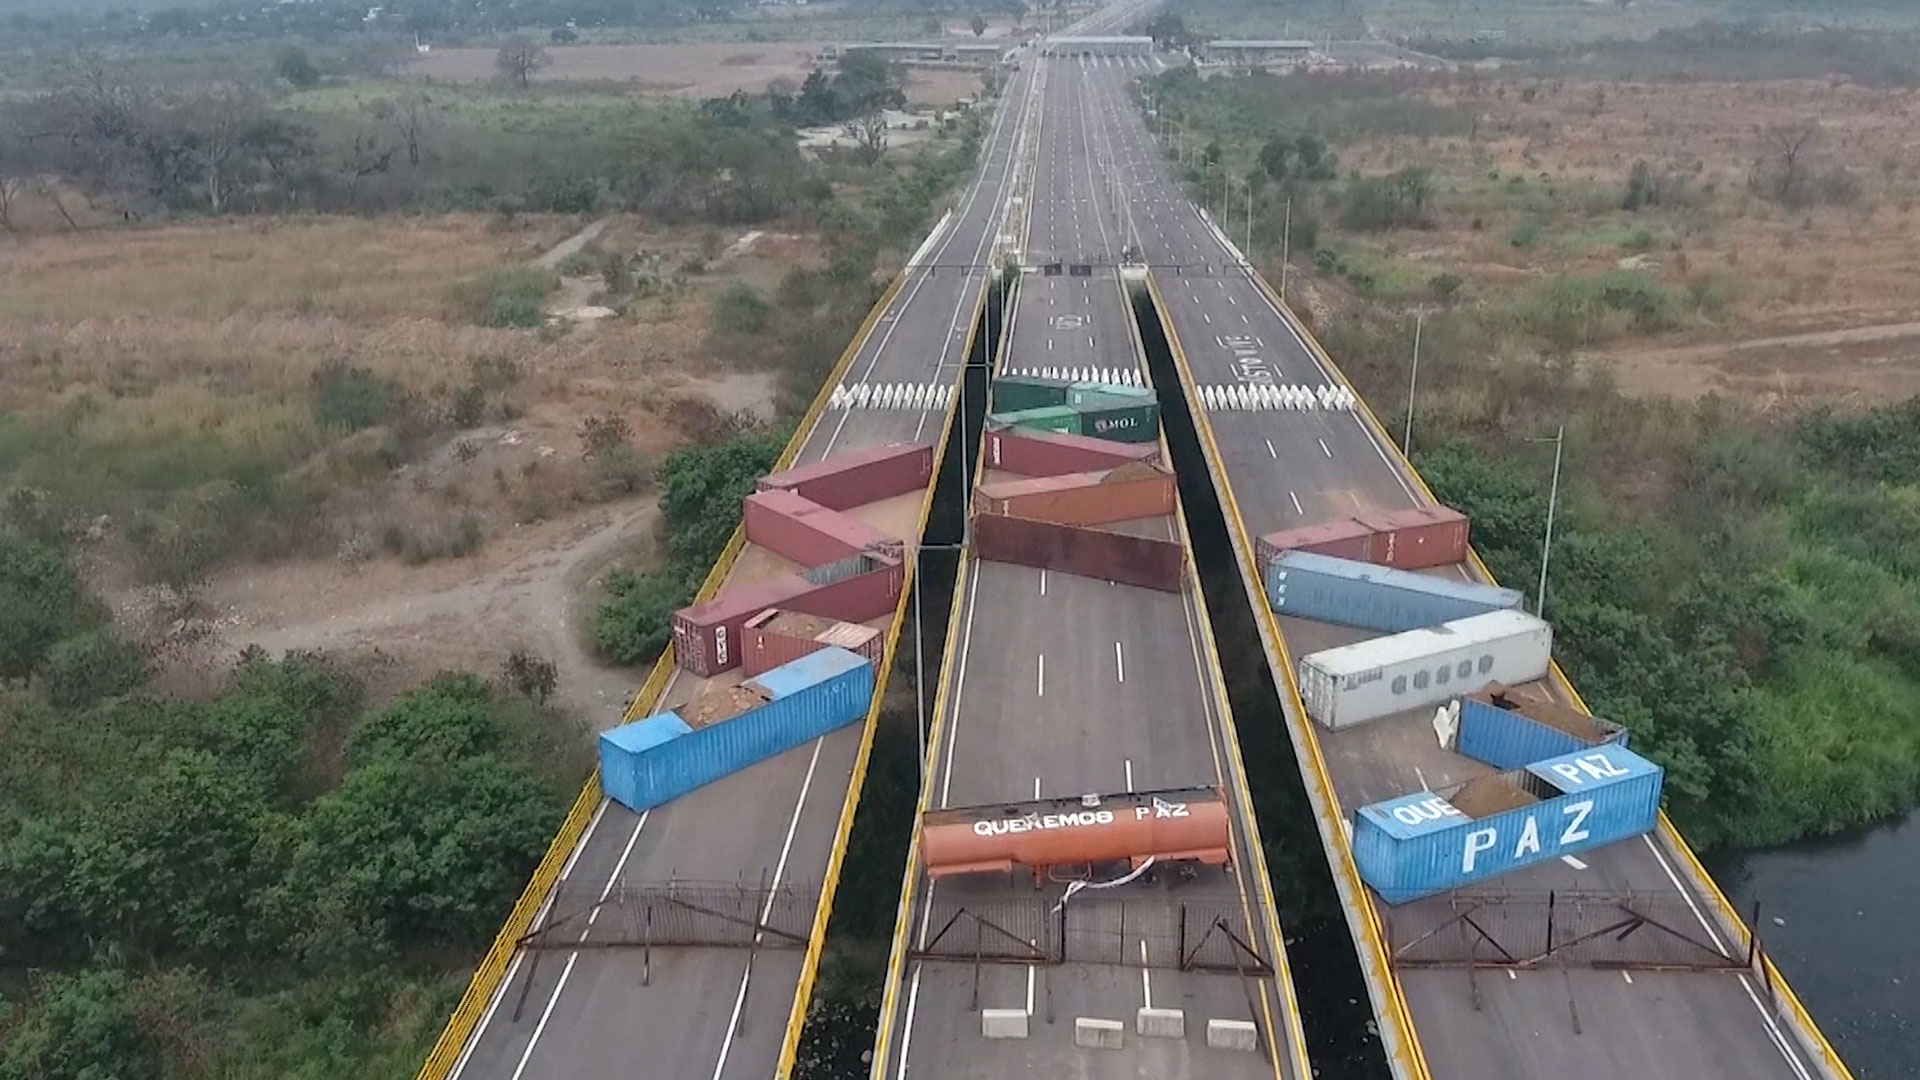 Así bloqueó el régimen de Maduro el puente internacional Tienditas, ubicado entre Cúcuta y Ureña, con contenedores